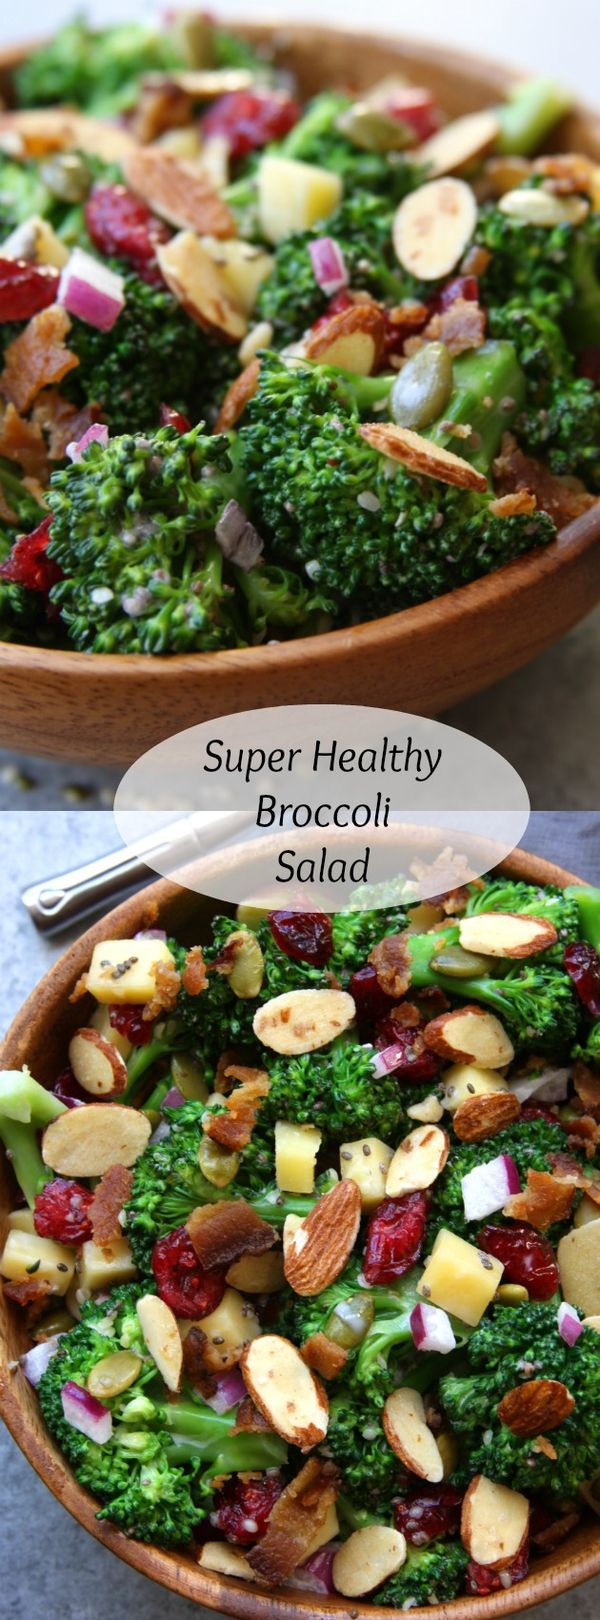 Super Healthy Broccoli Salad